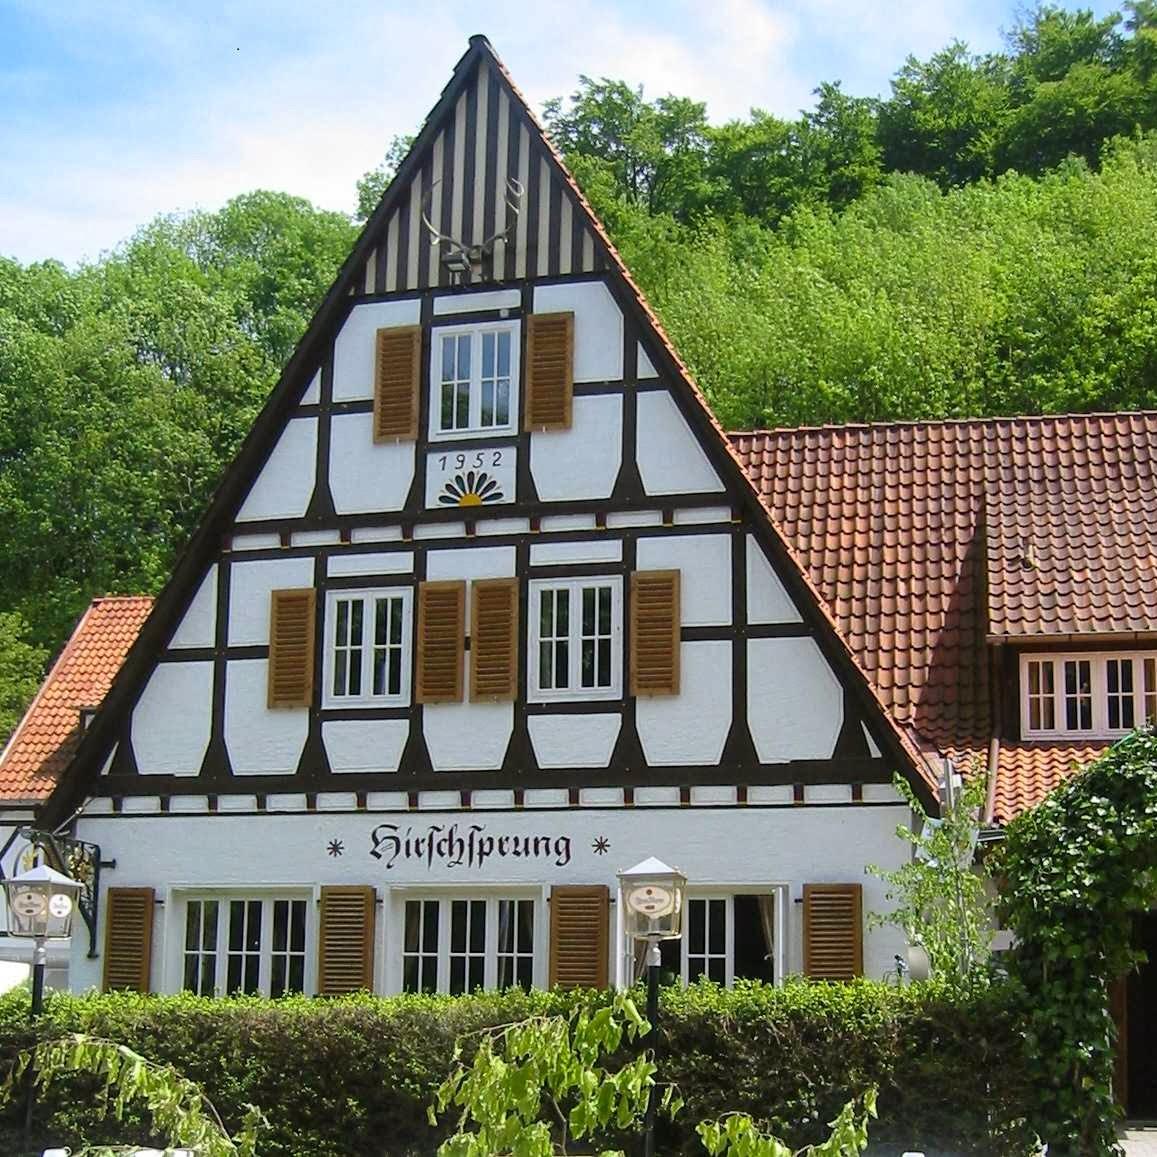 Restaurant "Landhaus Hirschsprung, Hotel und Restaurant" in Detmold